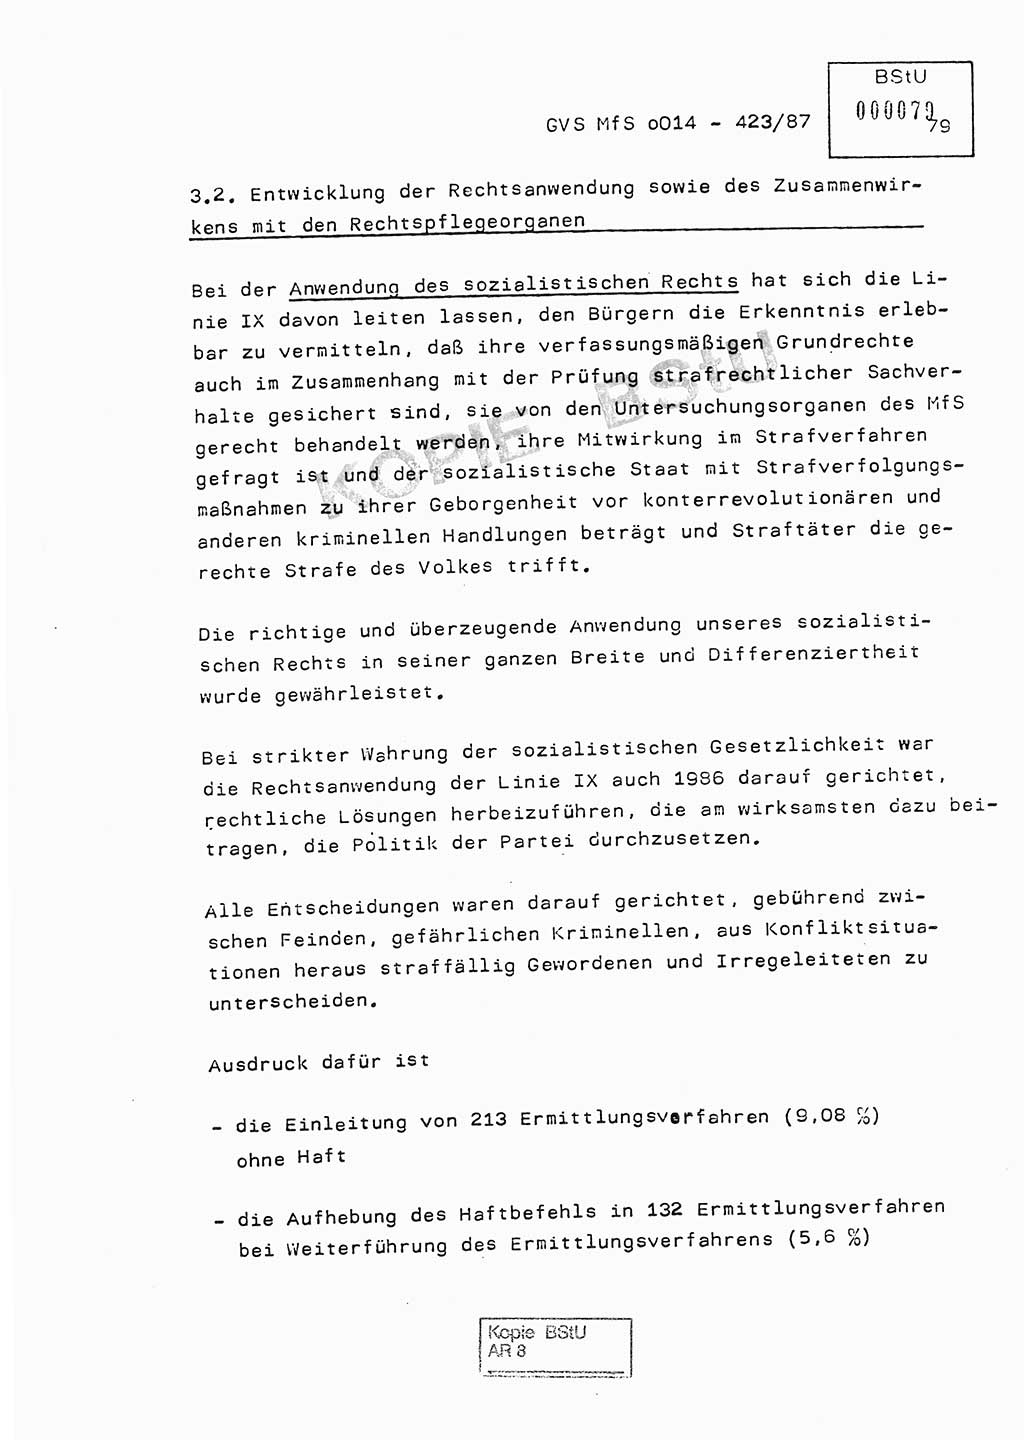 Jahresbericht der Hauptabteilung (HA) Ⅸ 1986, Einschätzung der Wirksamkeit der Untersuchungsarbeit im Jahre 1986, Ministerium für Staatssicherheit (MfS) der Deutschen Demokratischen Republik (DDR), Hauptabteilung Ⅸ, Geheime Verschlußsache (GVS) o014-423/87, Berlin 1987, Seite 79 (Einsch. MfS DDR HA Ⅸ GVS o014-423/87 1986, S. 79)